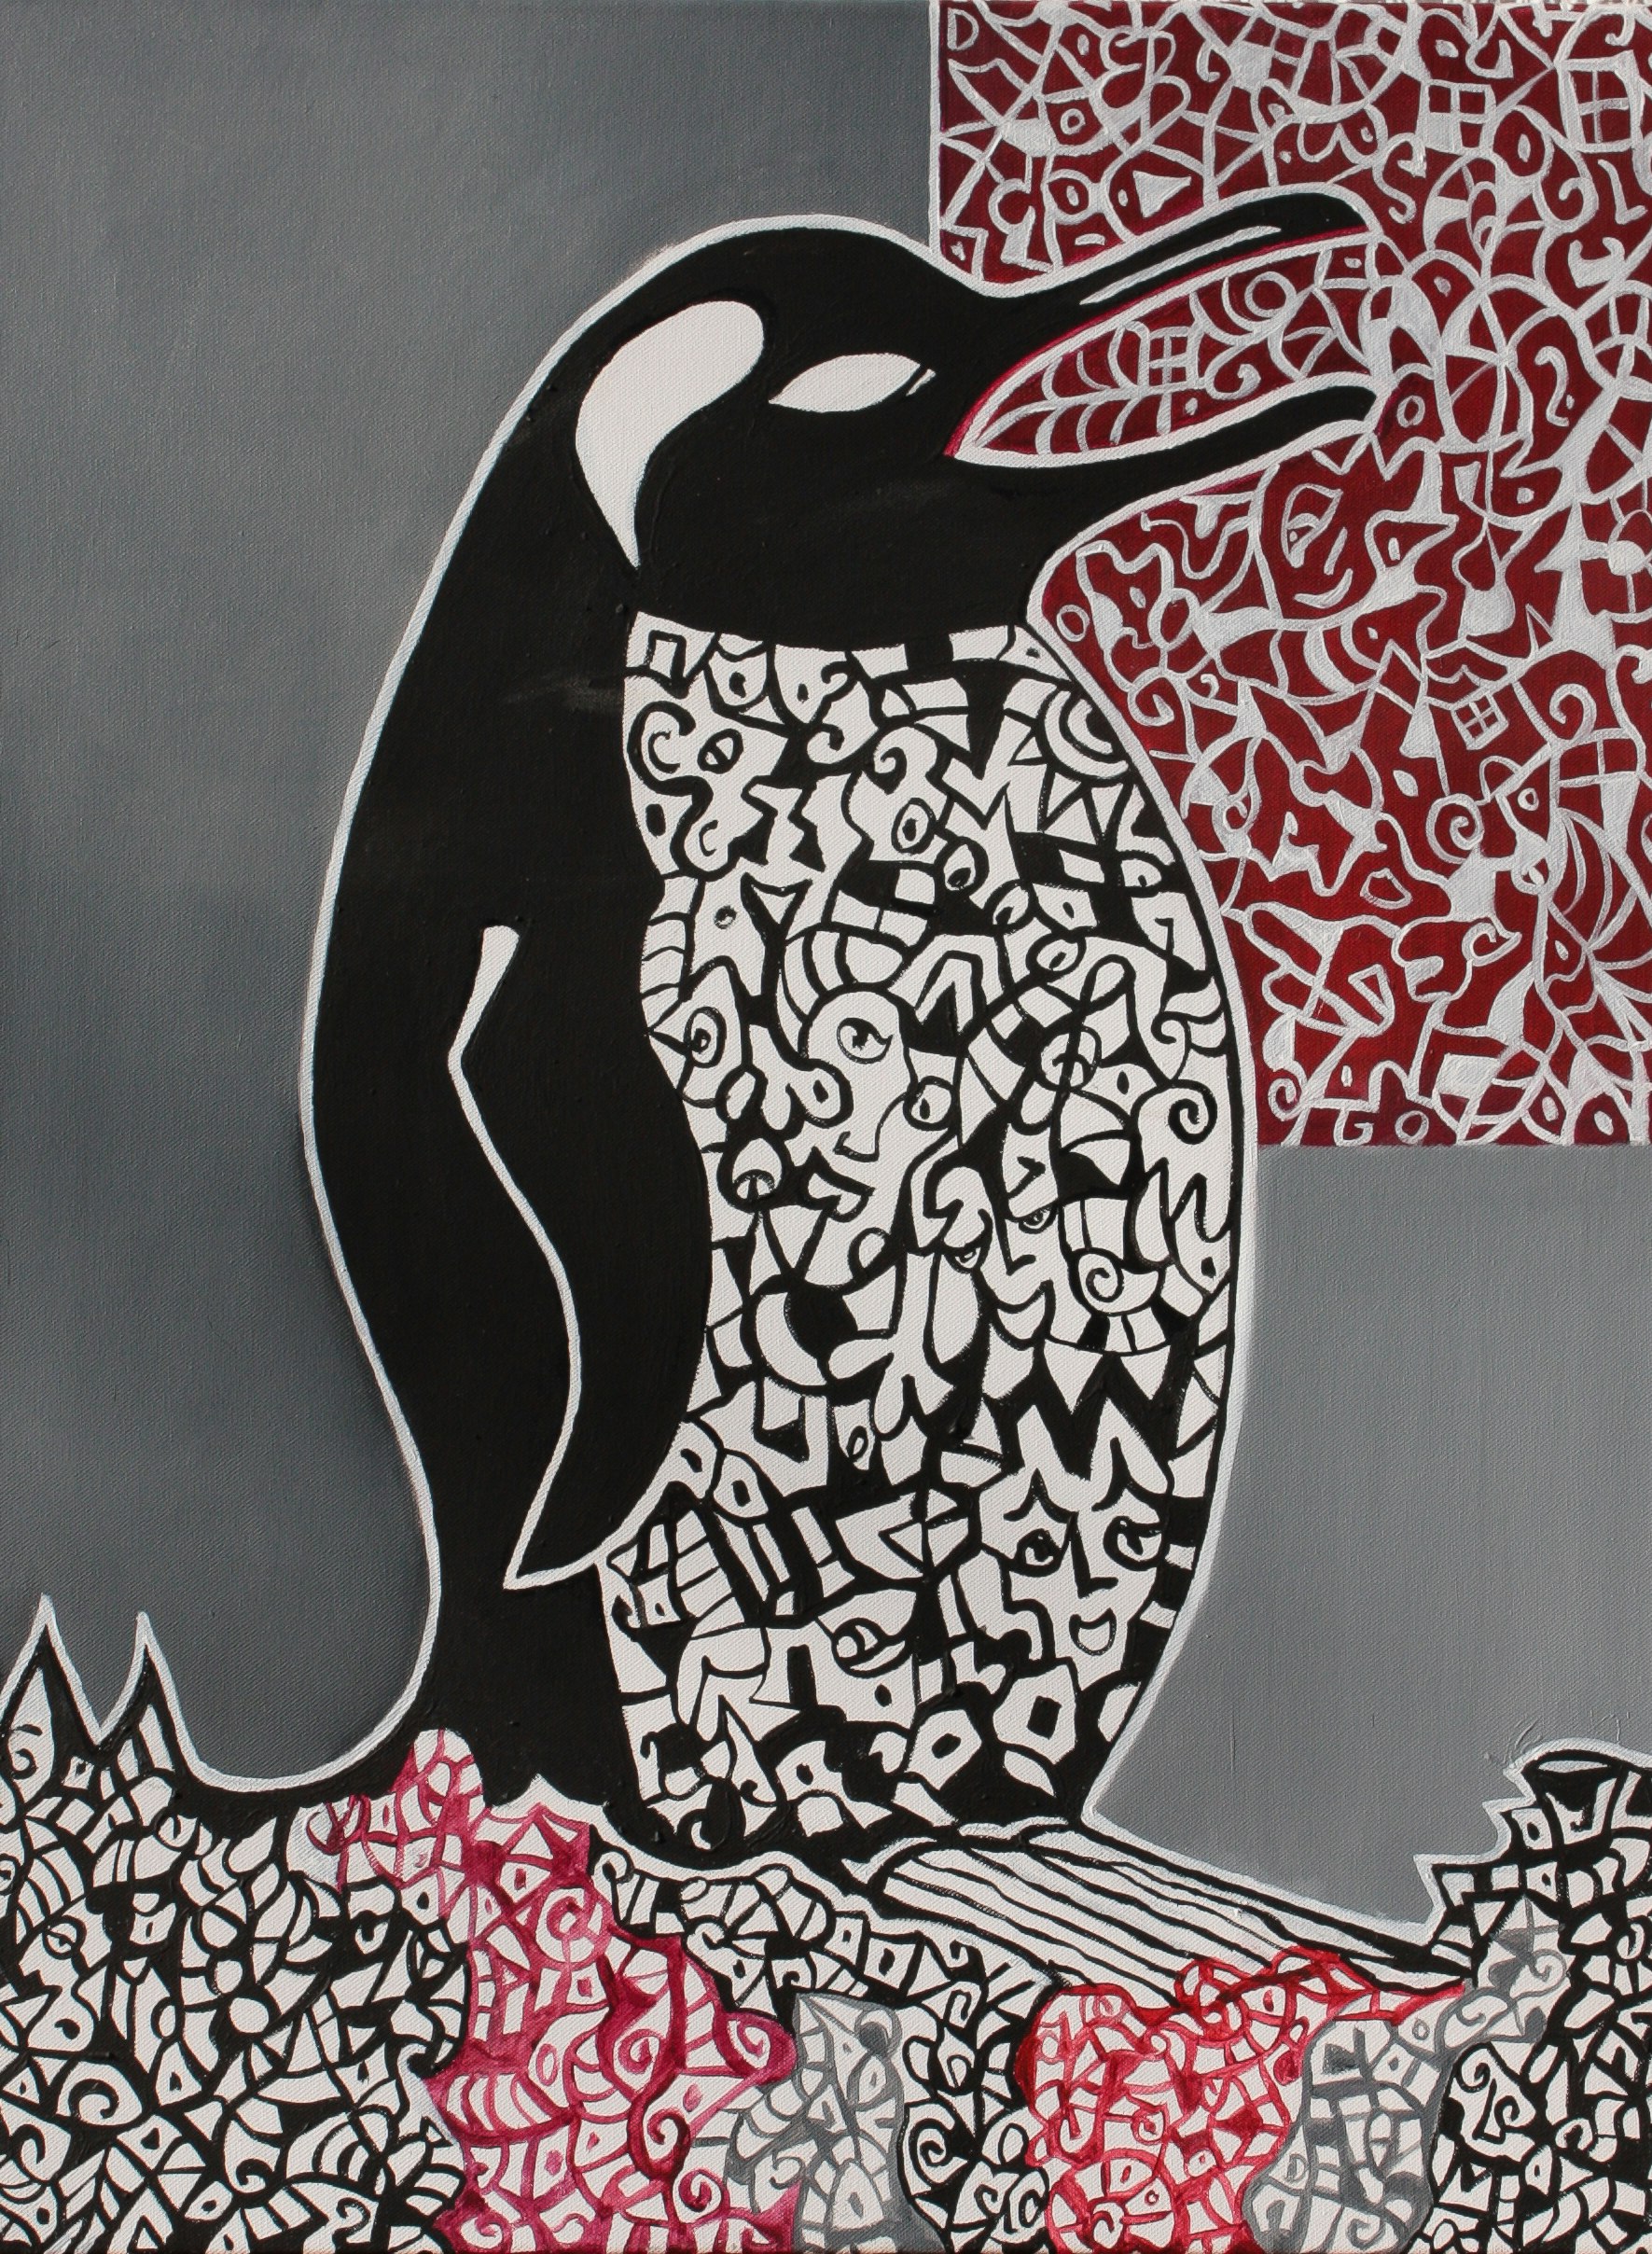 Penguin singing